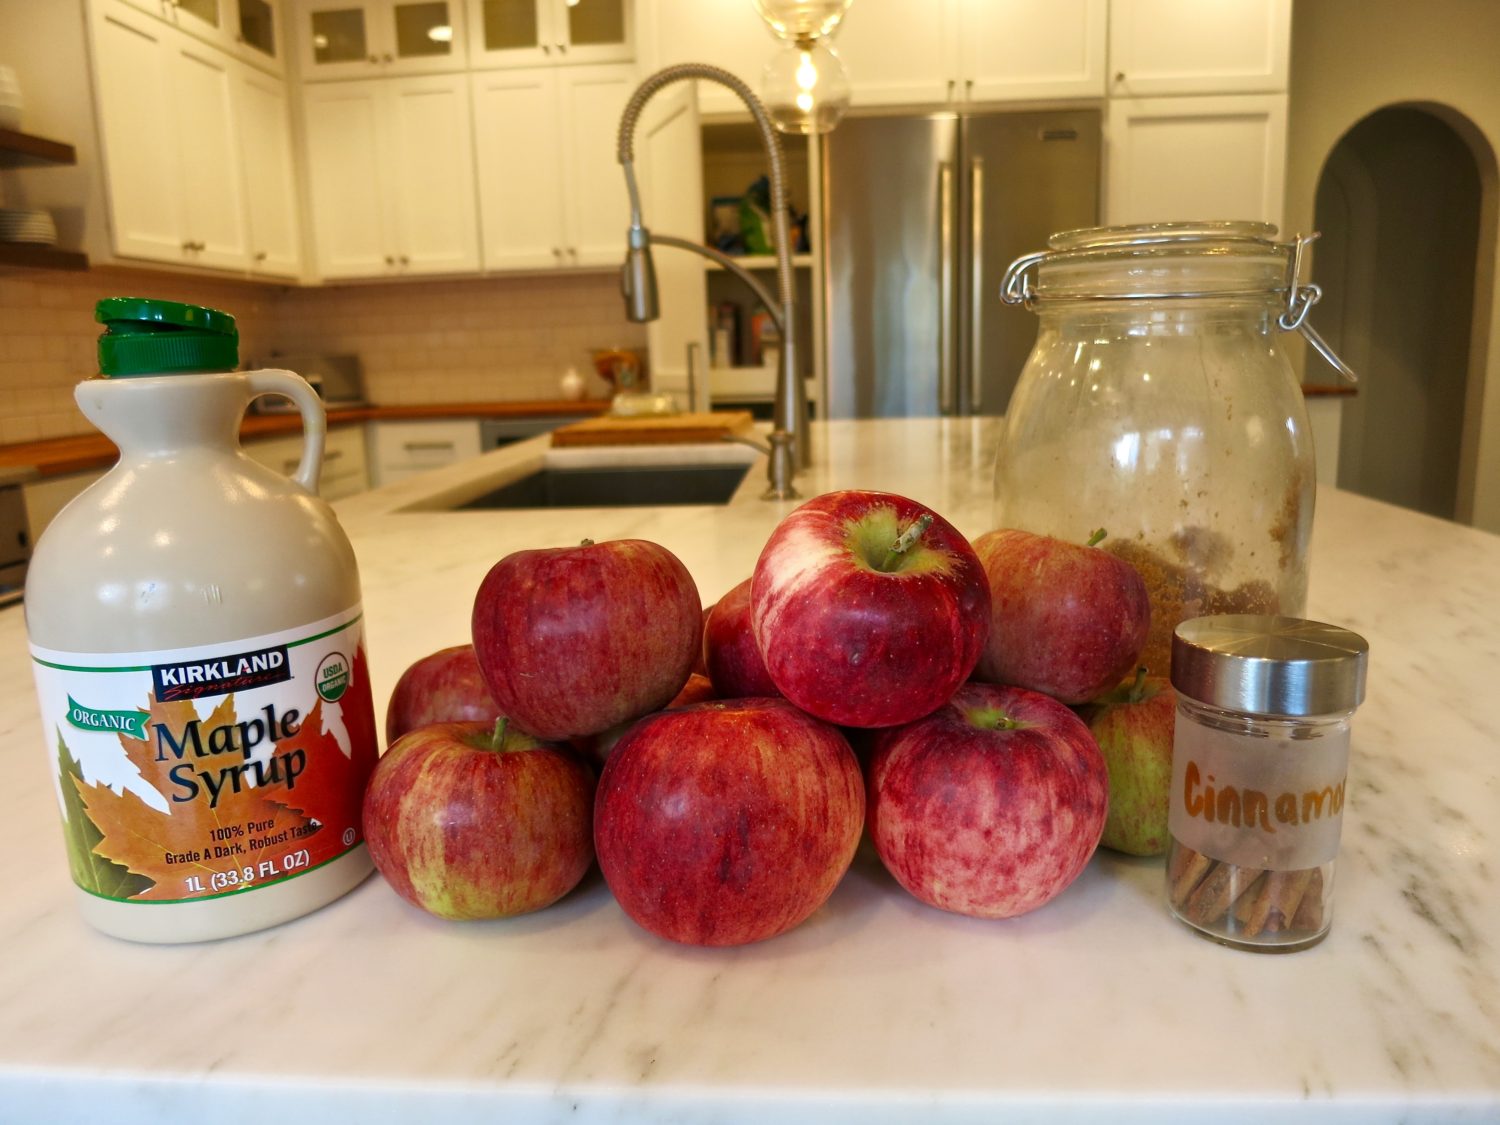 Stewed Apple ingredients